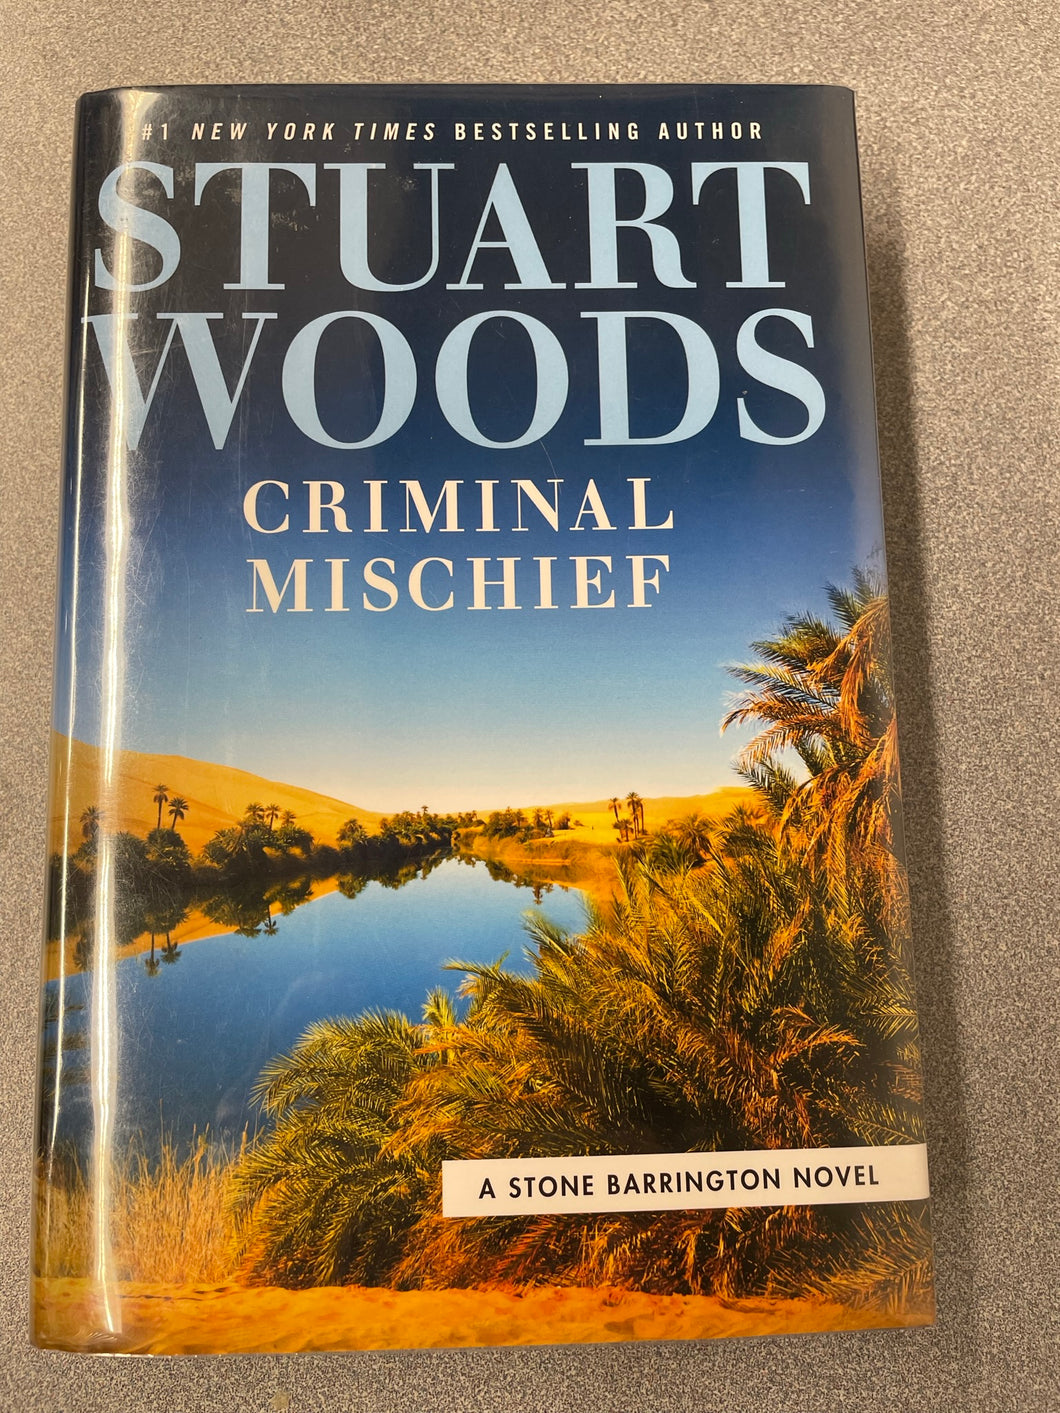 Woods, Stuart, Criminal Mischief [2021] MY 6/23